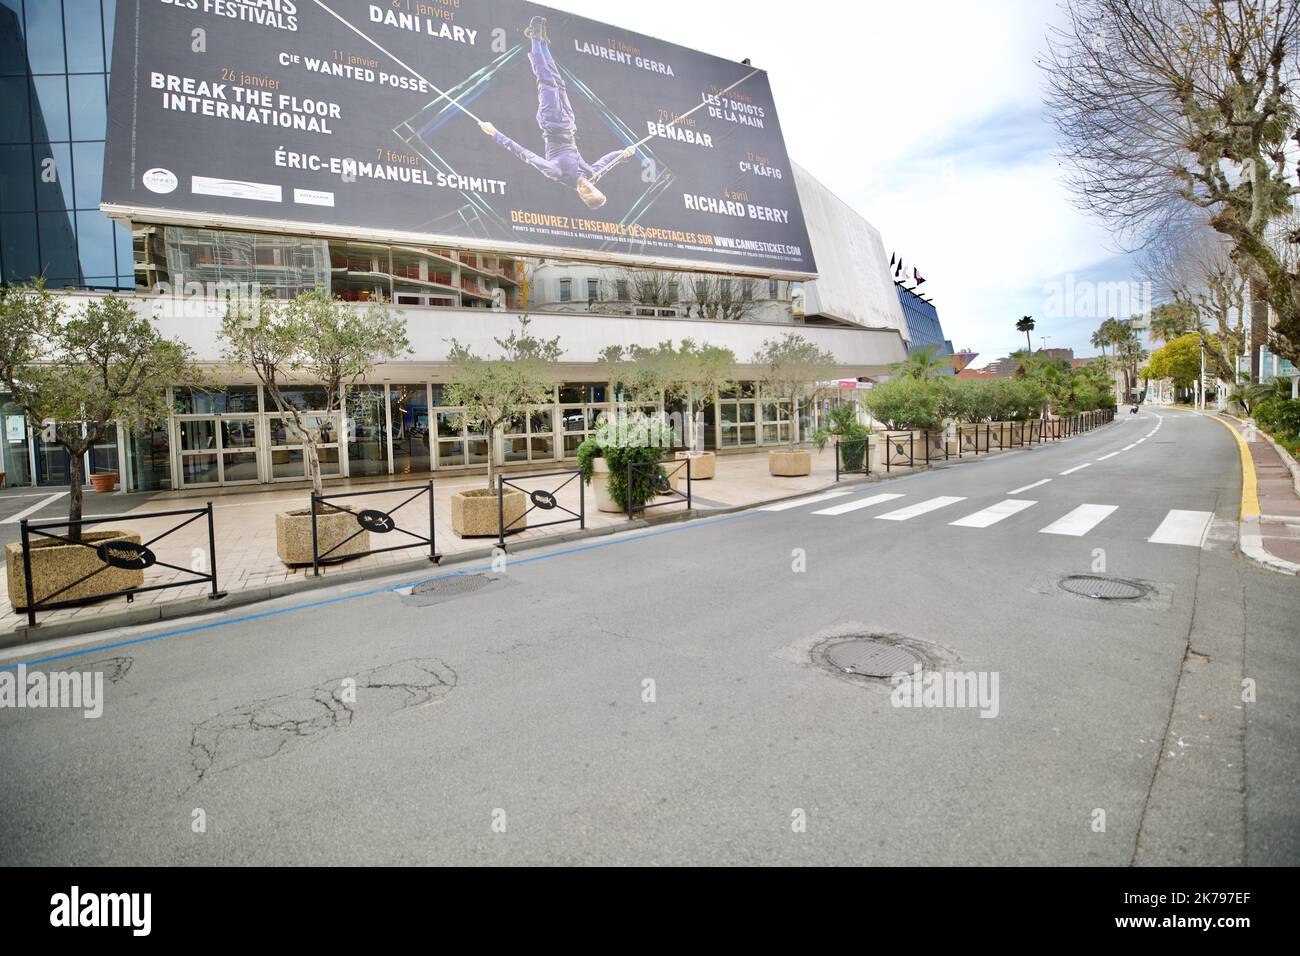 Der Palais des Festival, der sich normalerweise auf das Filmfestival in Cannes vorbereiten würde, hat stattdessen seine Türen als Unterschlupf für Obdachlose während der Coronavirus-Sperre geöffnet Stockfoto